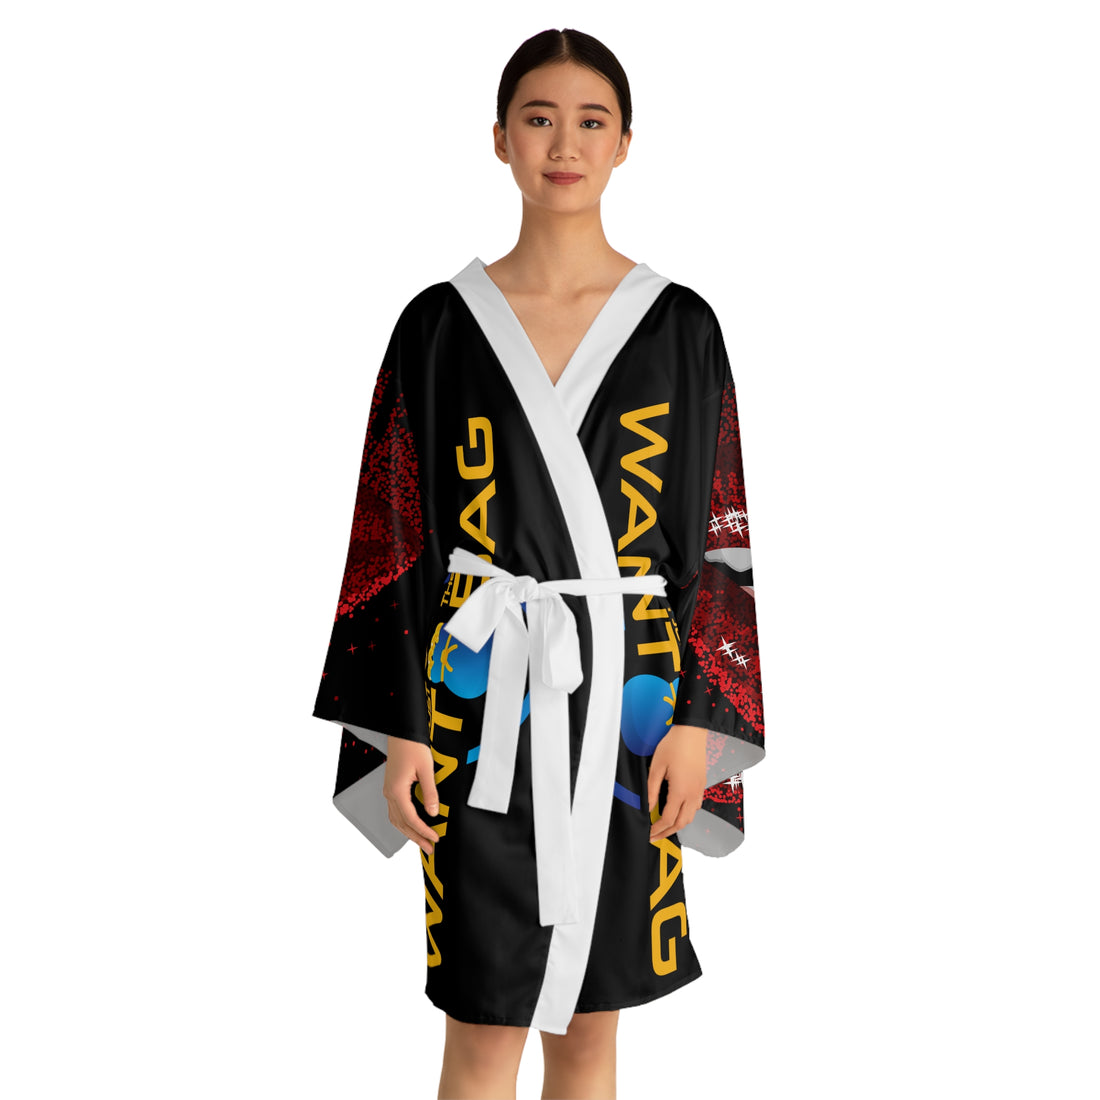 I.J.W.T.B. Long Sleeve Kimono Robe